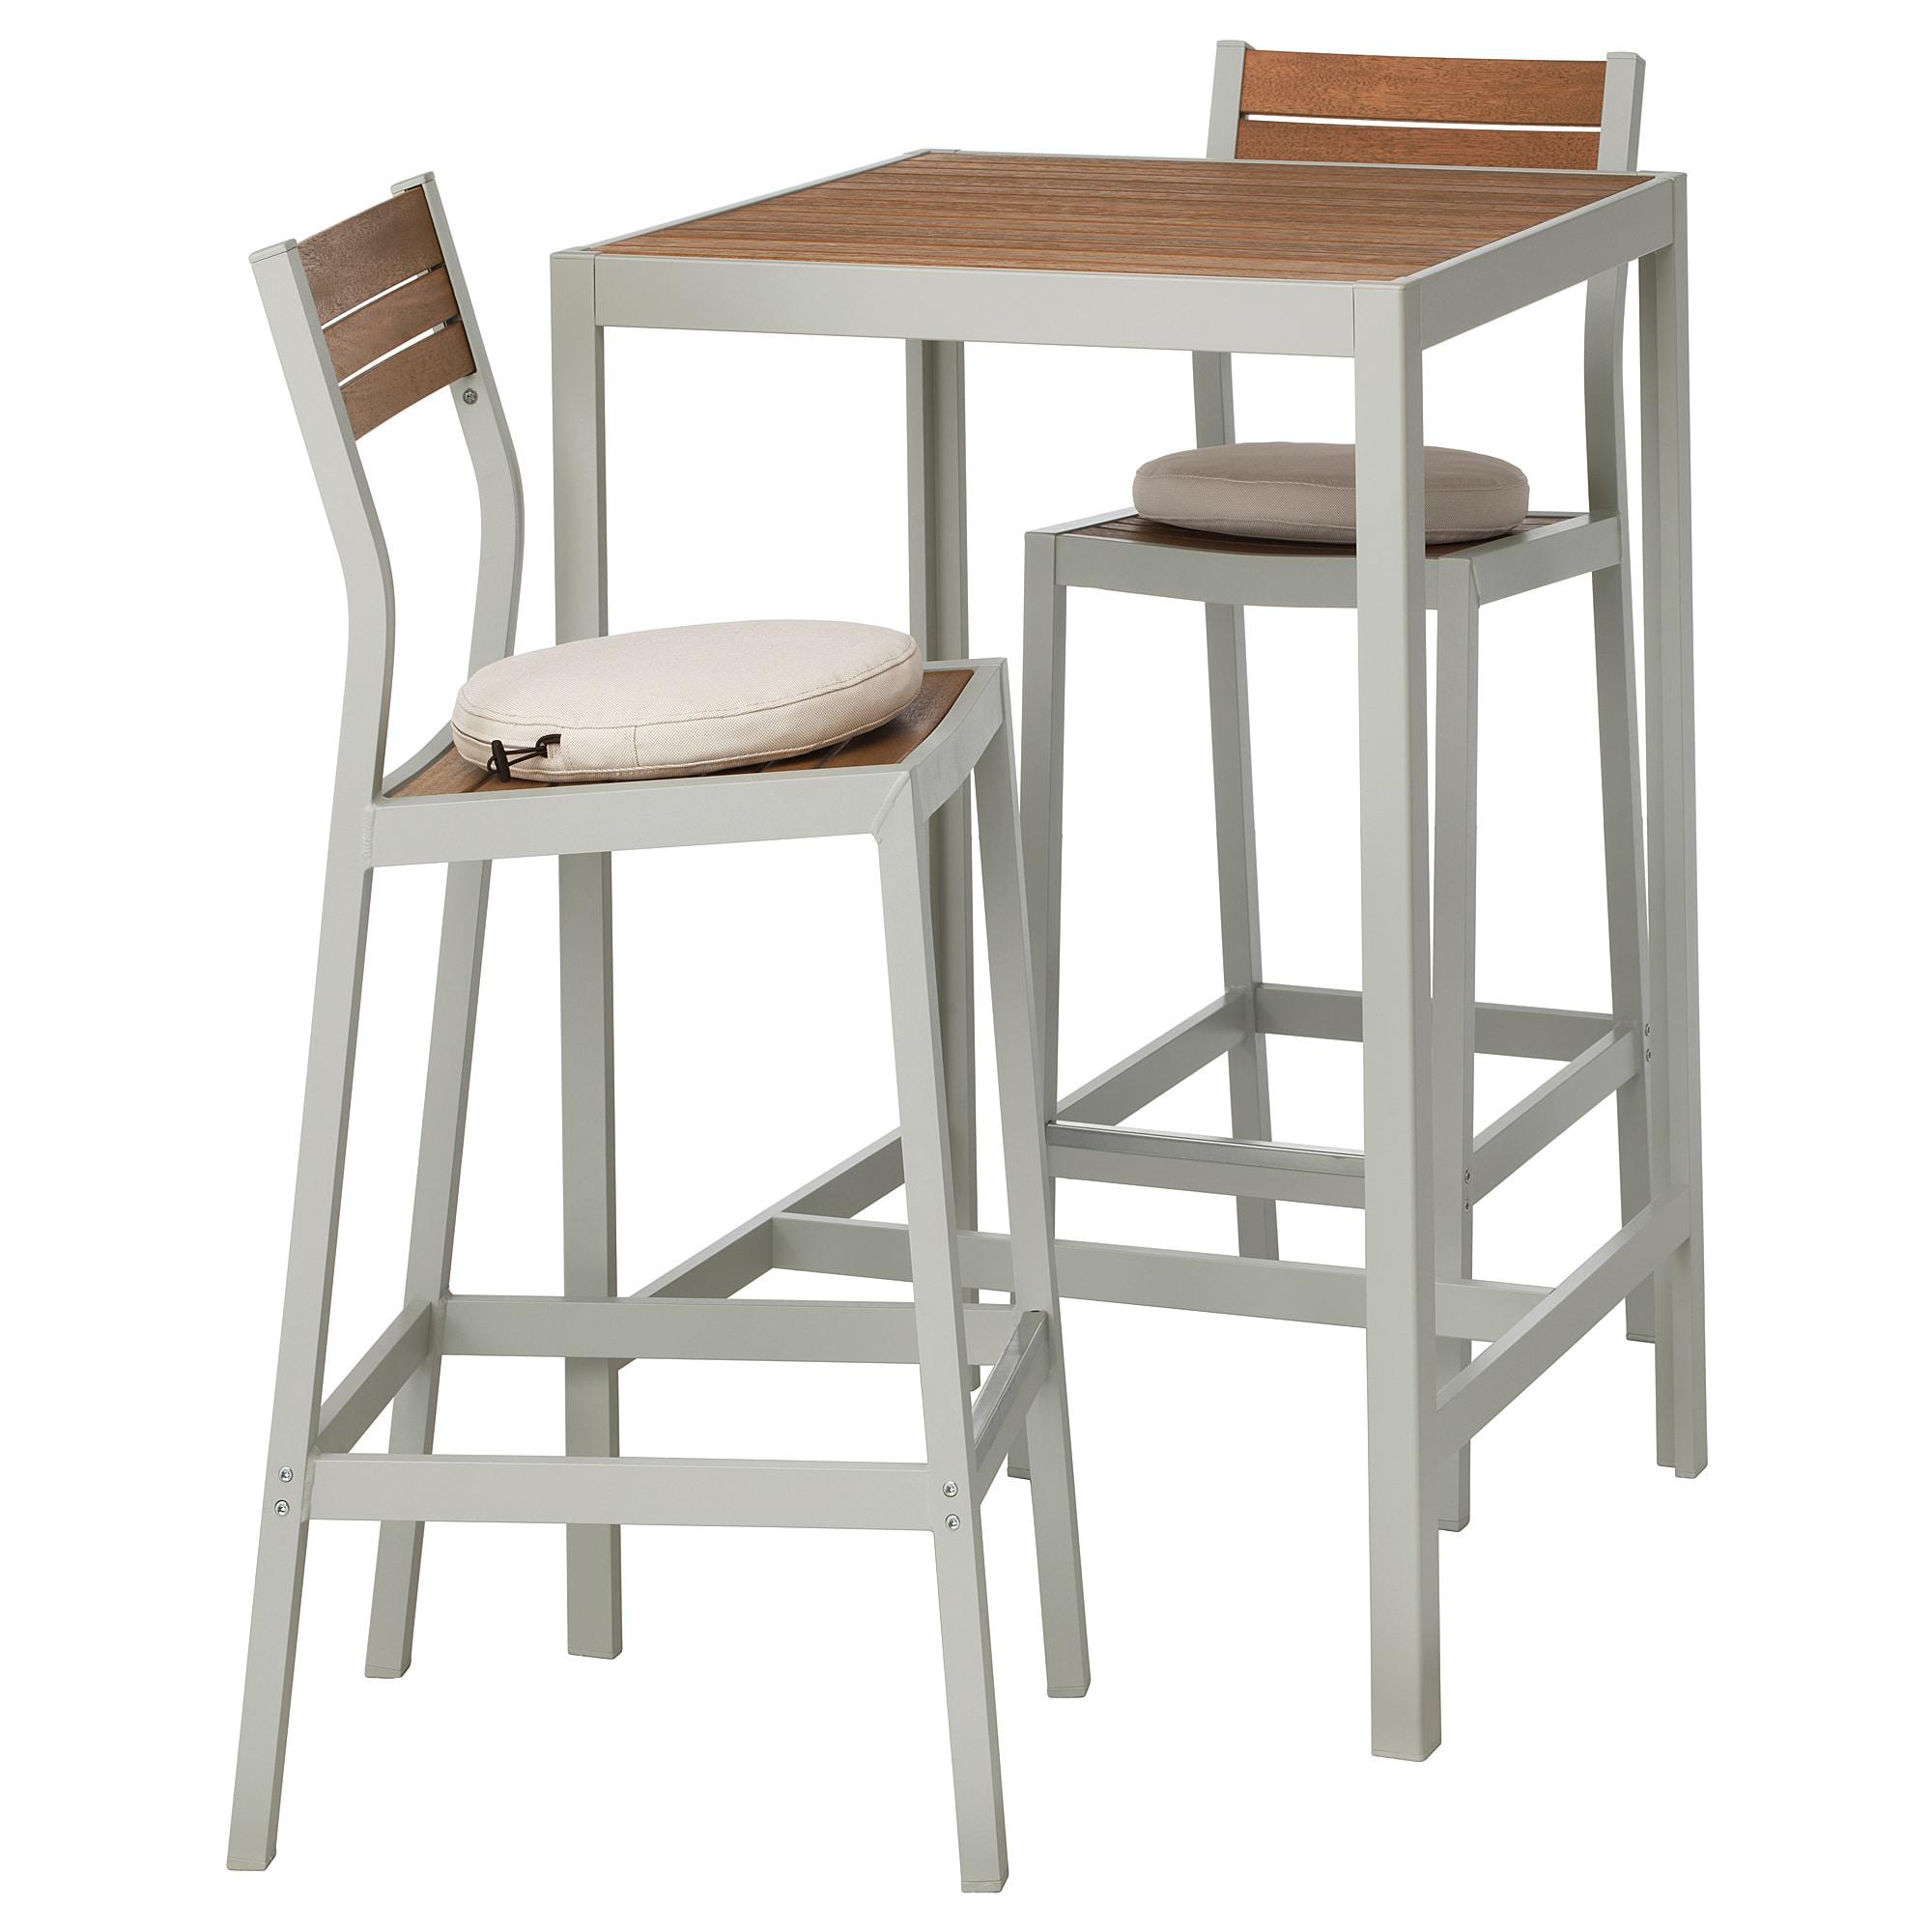 [ด่วน!! โปรโมชั่นมีจำนวนจำกัด] โต๊ะบาร์+เก้าอี้บาร์ 2 ตัว กลางแจ้งสินค้าดี ราคาถูก จากแผนก สินค้าที่ใช้นอกบ้าน